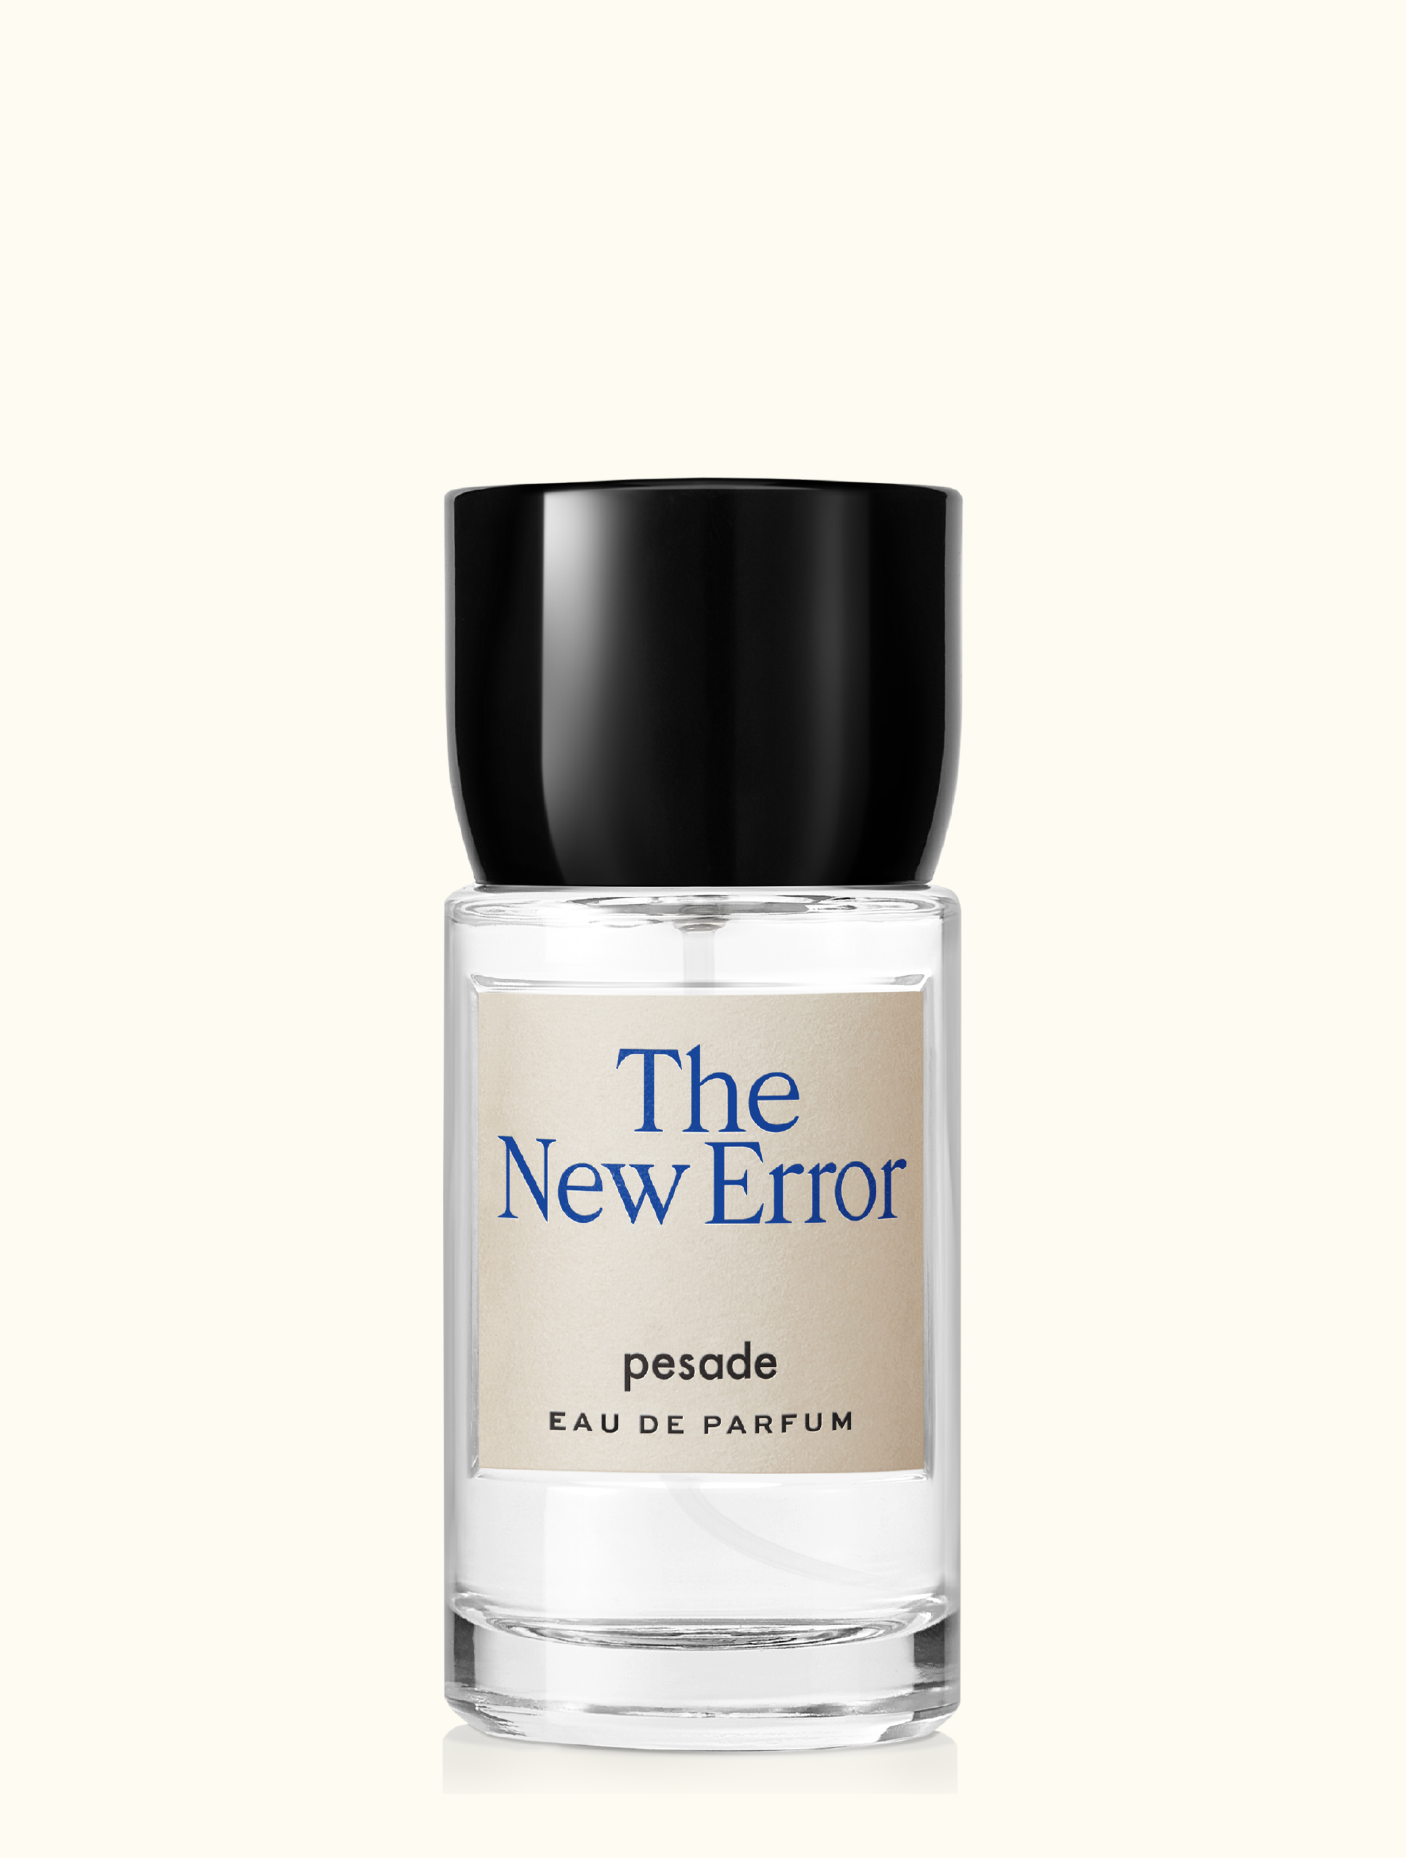 The New Error Eau de parfum 30ml